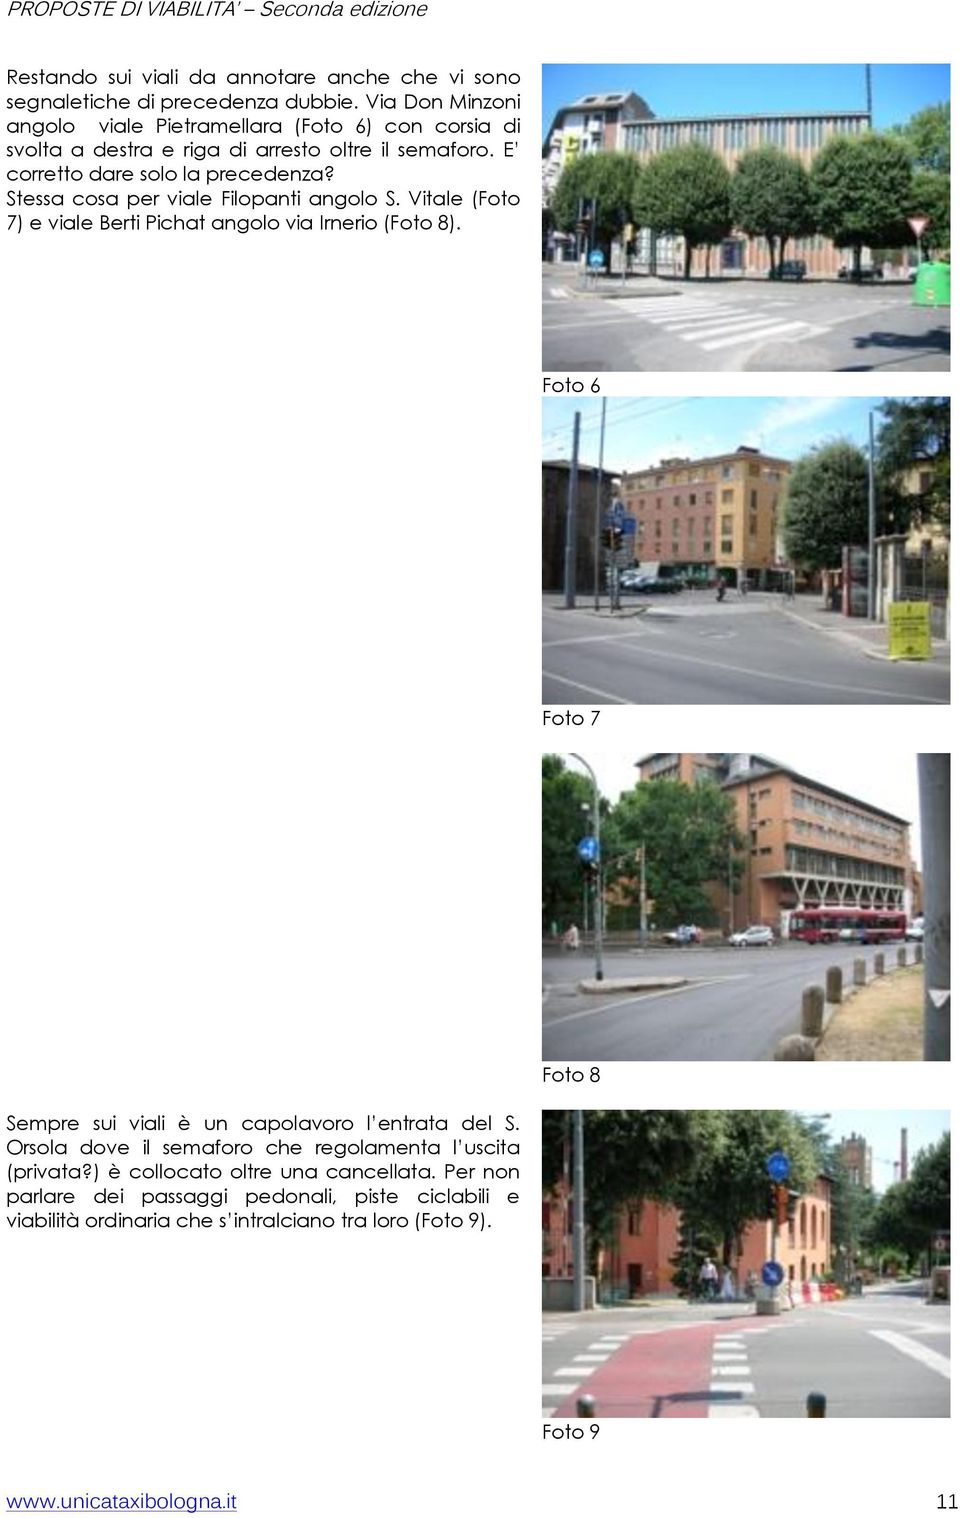 Stessa cosa per viale Filopanti angolo S. Vitale (Foto 7) e viale Berti Pichat angolo via Irnerio (Foto 8).